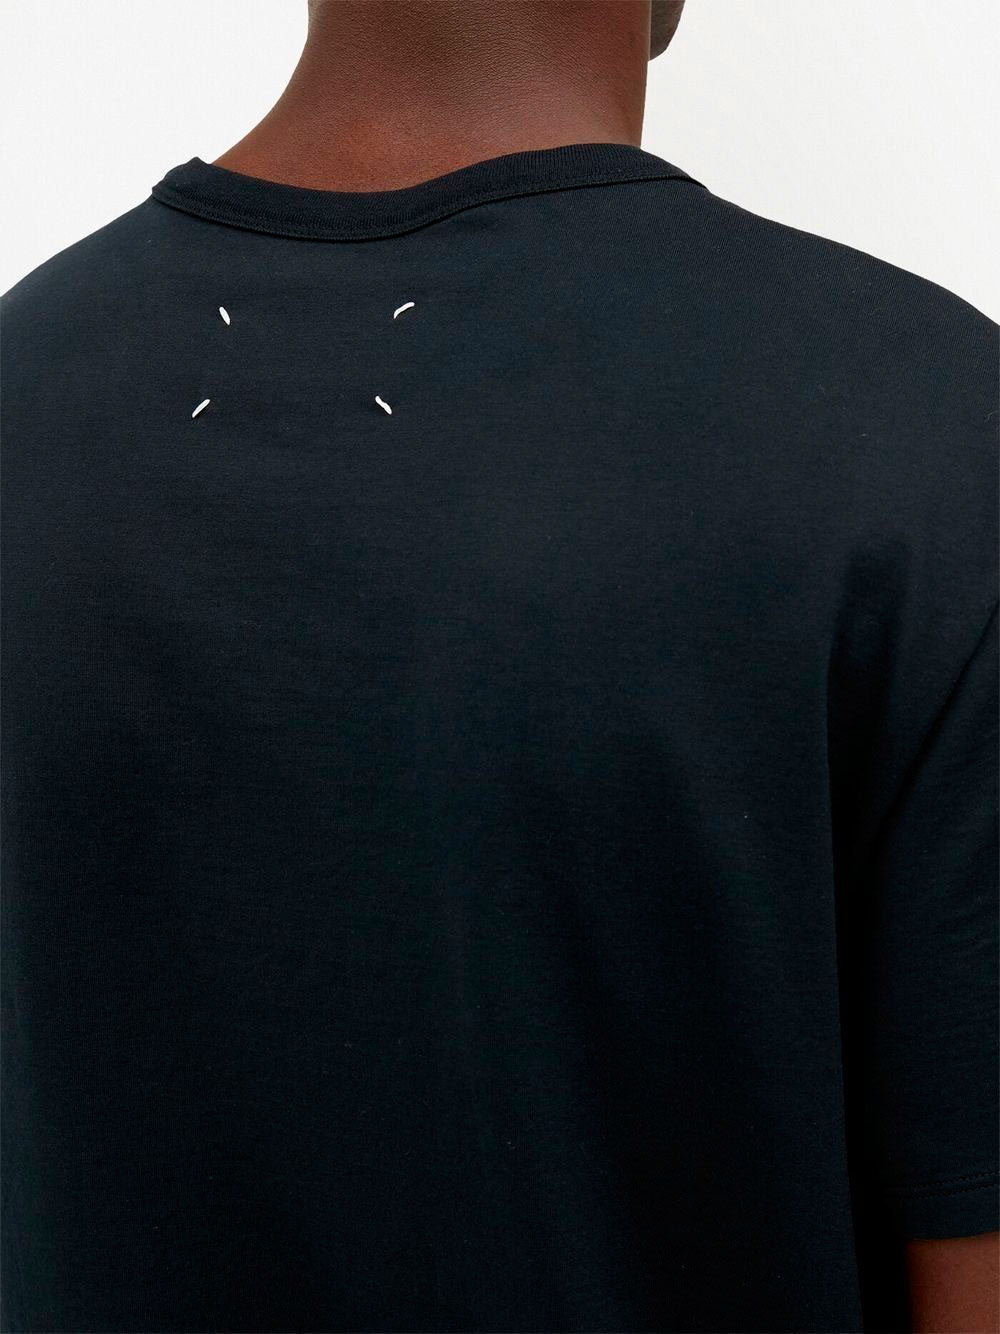 Camiseta de manga corta con logo bordado